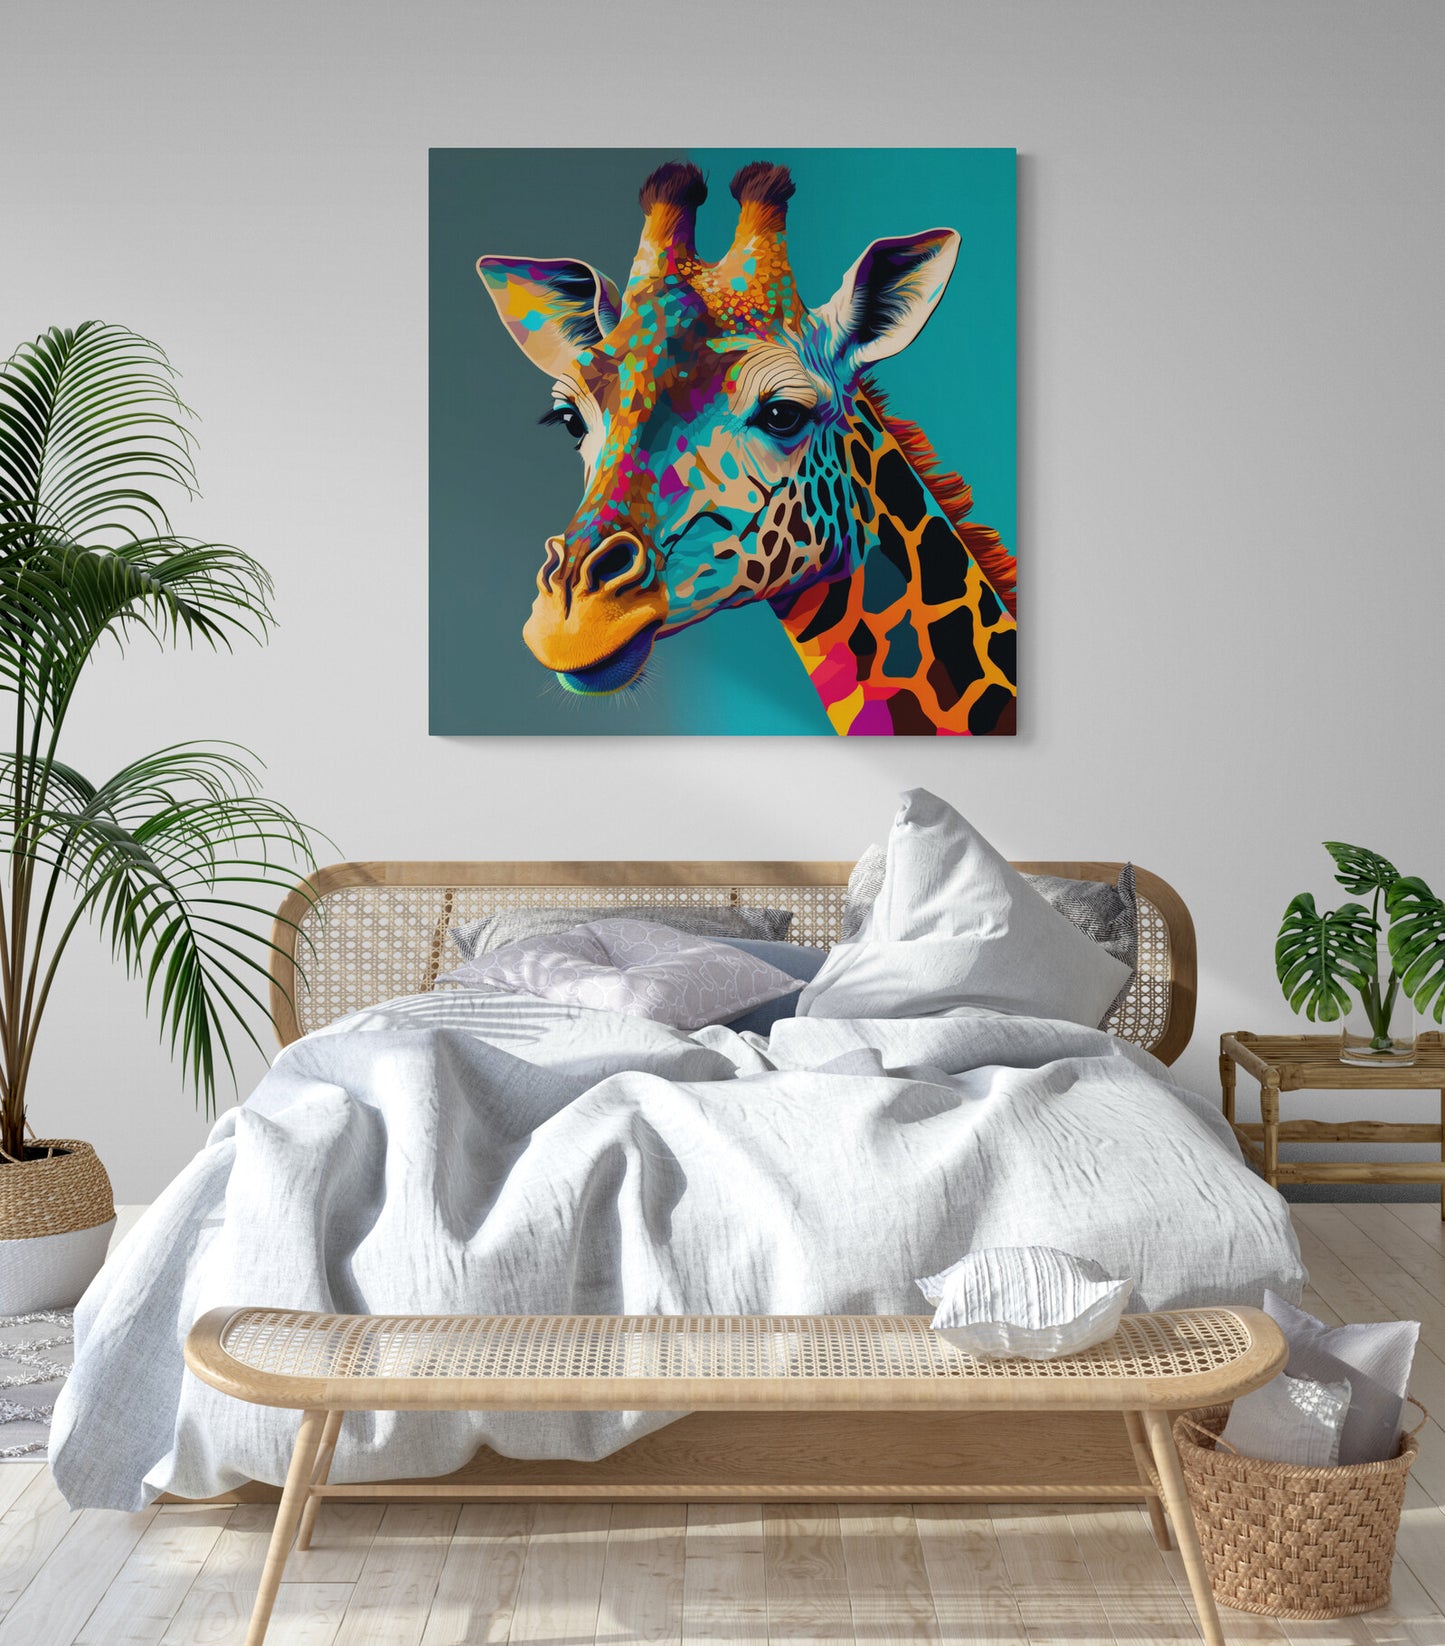 Tableau deco pop art, girafe coloré sur fond bleu